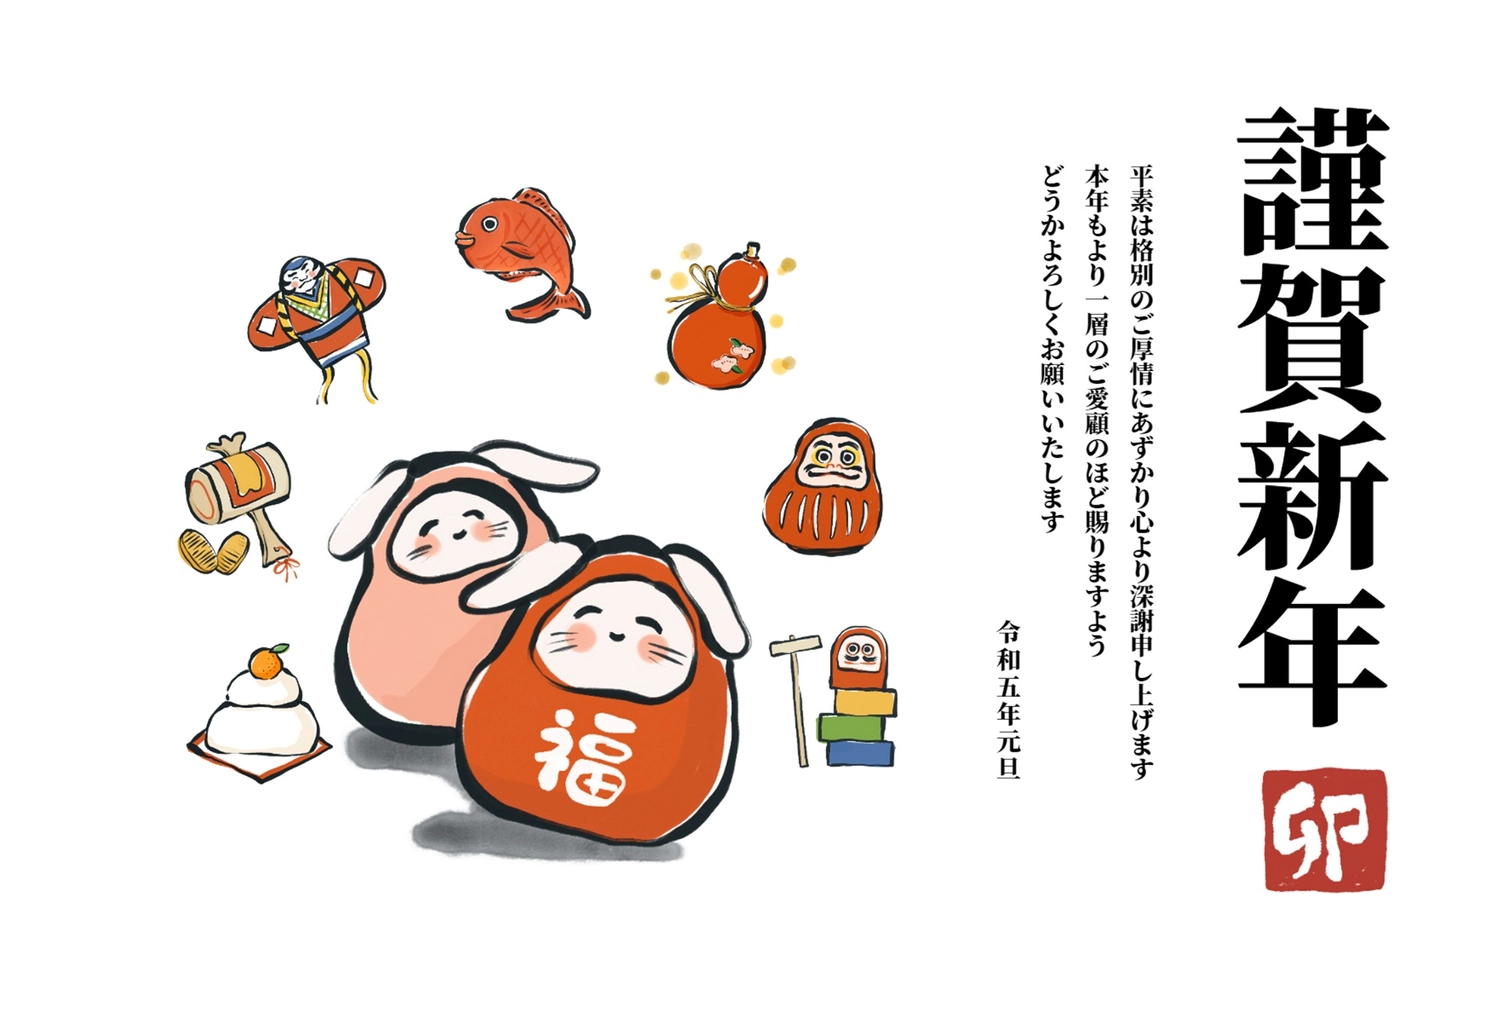 年賀状　うさぎだるま, daruma, two (objects), sign and seal, New Year Card template